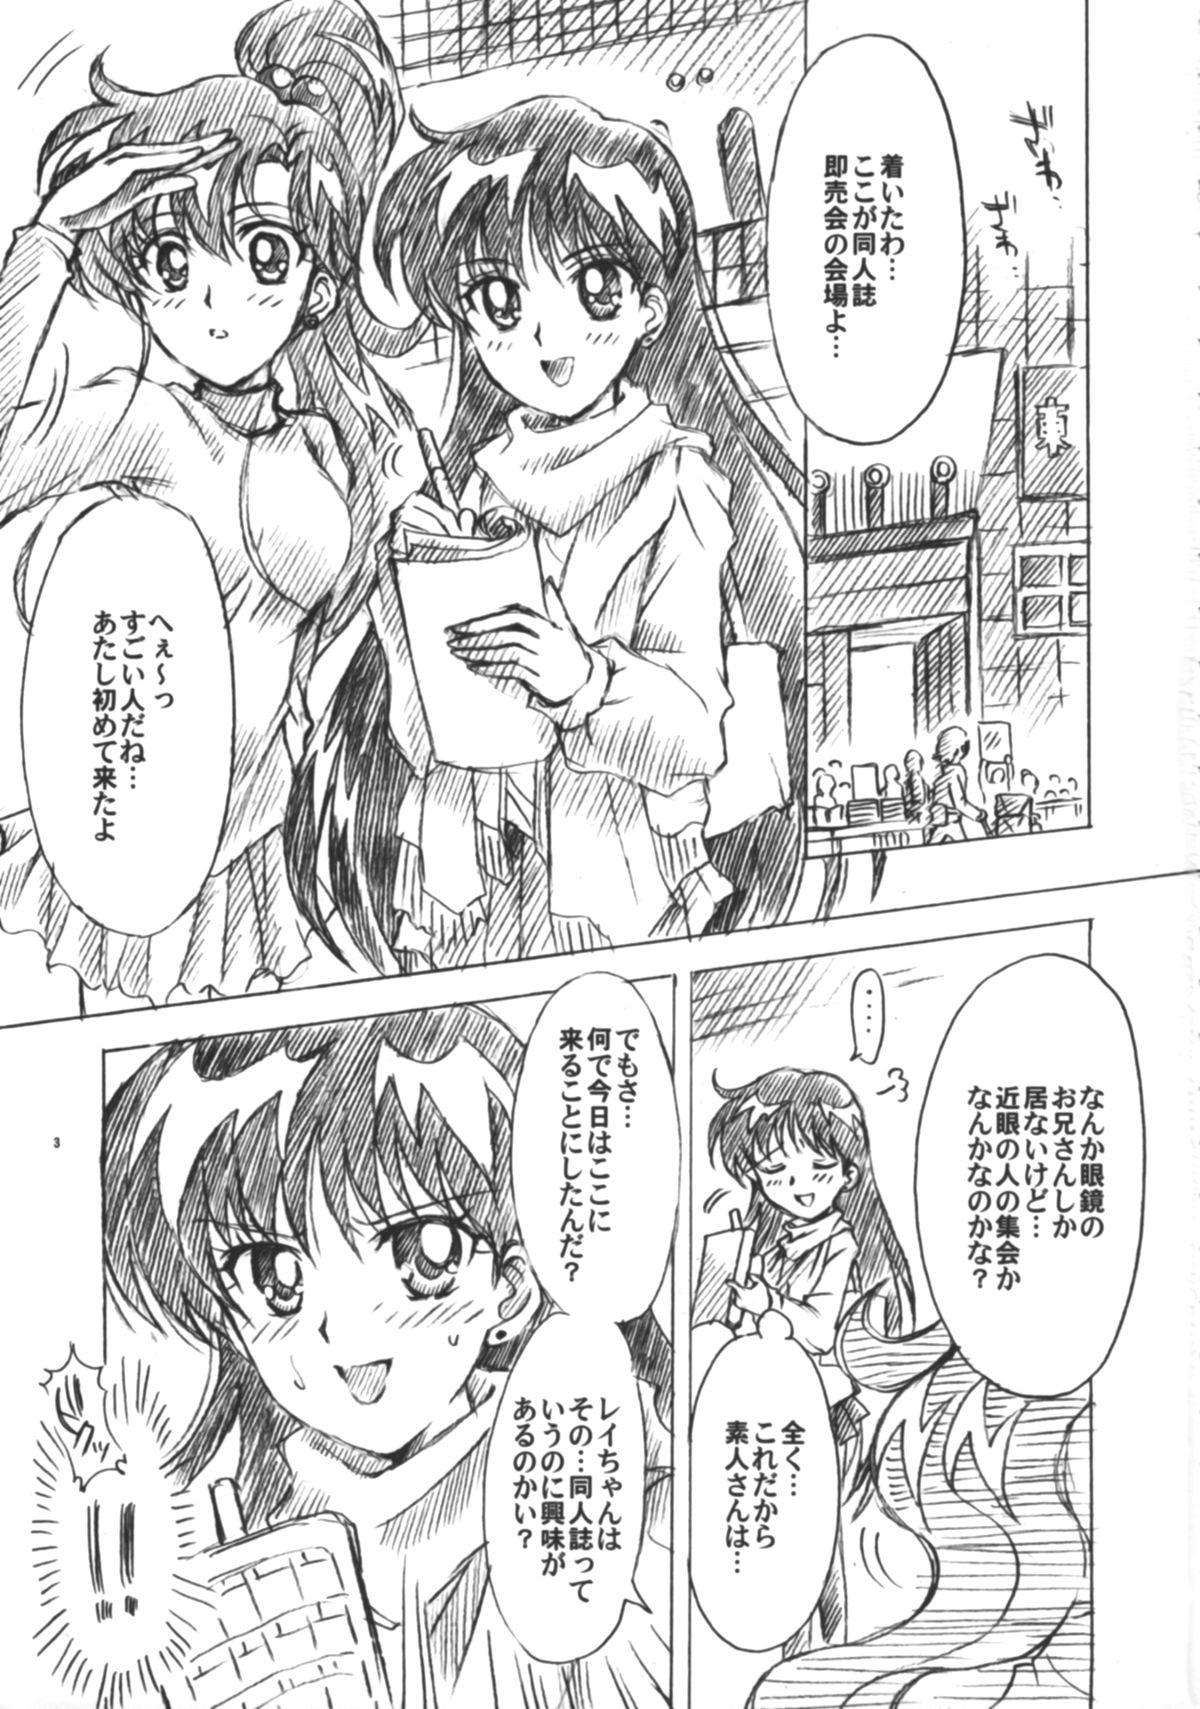 Jeans Boku no Kanojo wa Sailor Senshi 6 - Sailor moon Gay Shop - Page 4